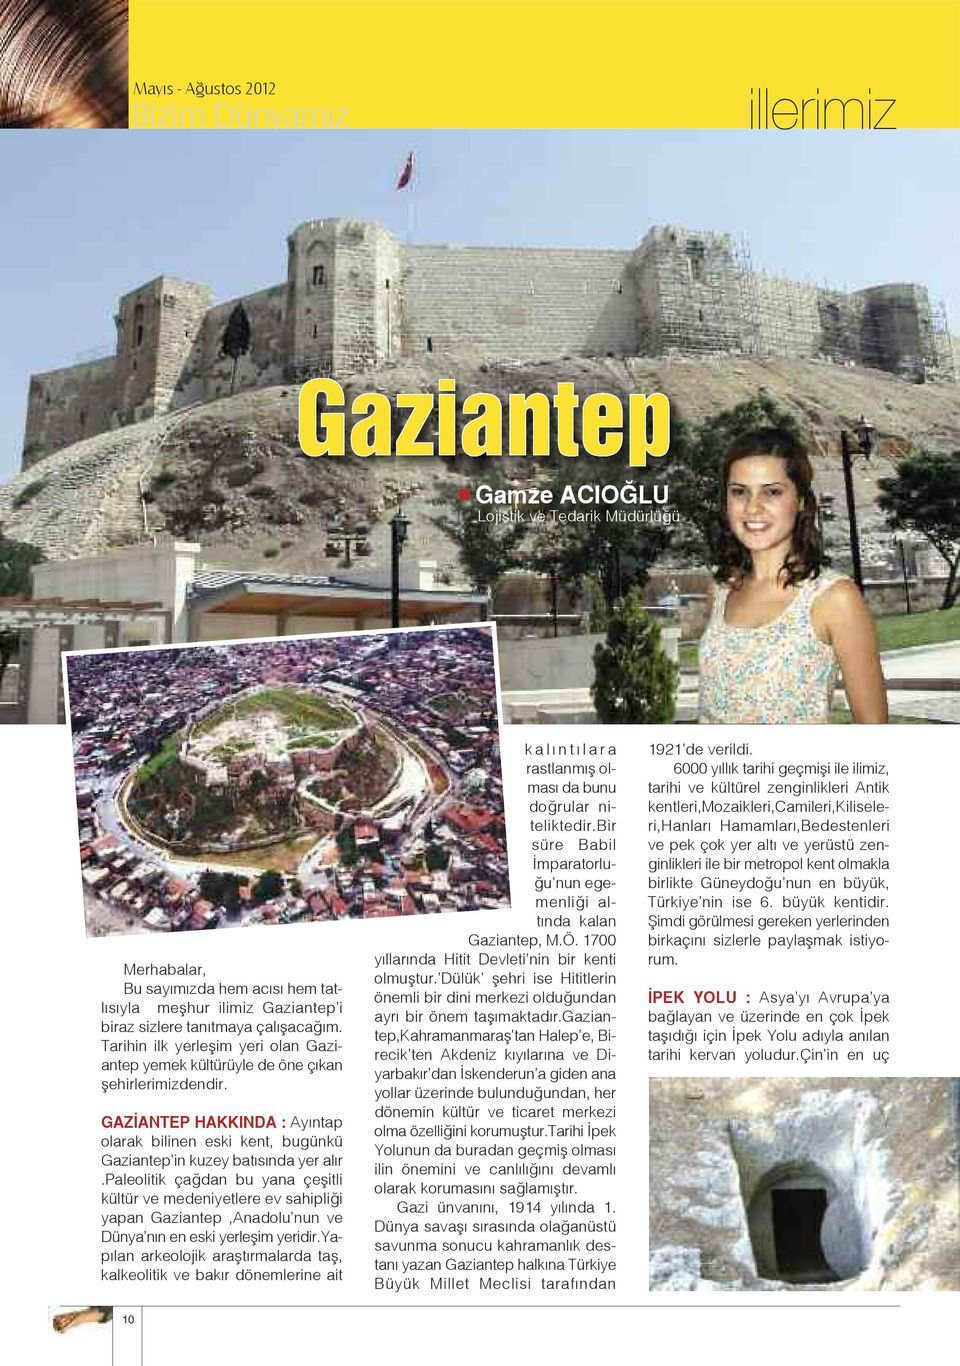 paleolitik çağdan bu yana çeşitli kültür ve medeniyetlere ev sahipliği yapan Gaziantep,Anadolu nun ve Dünya nın en eski yerleşim yeridir.